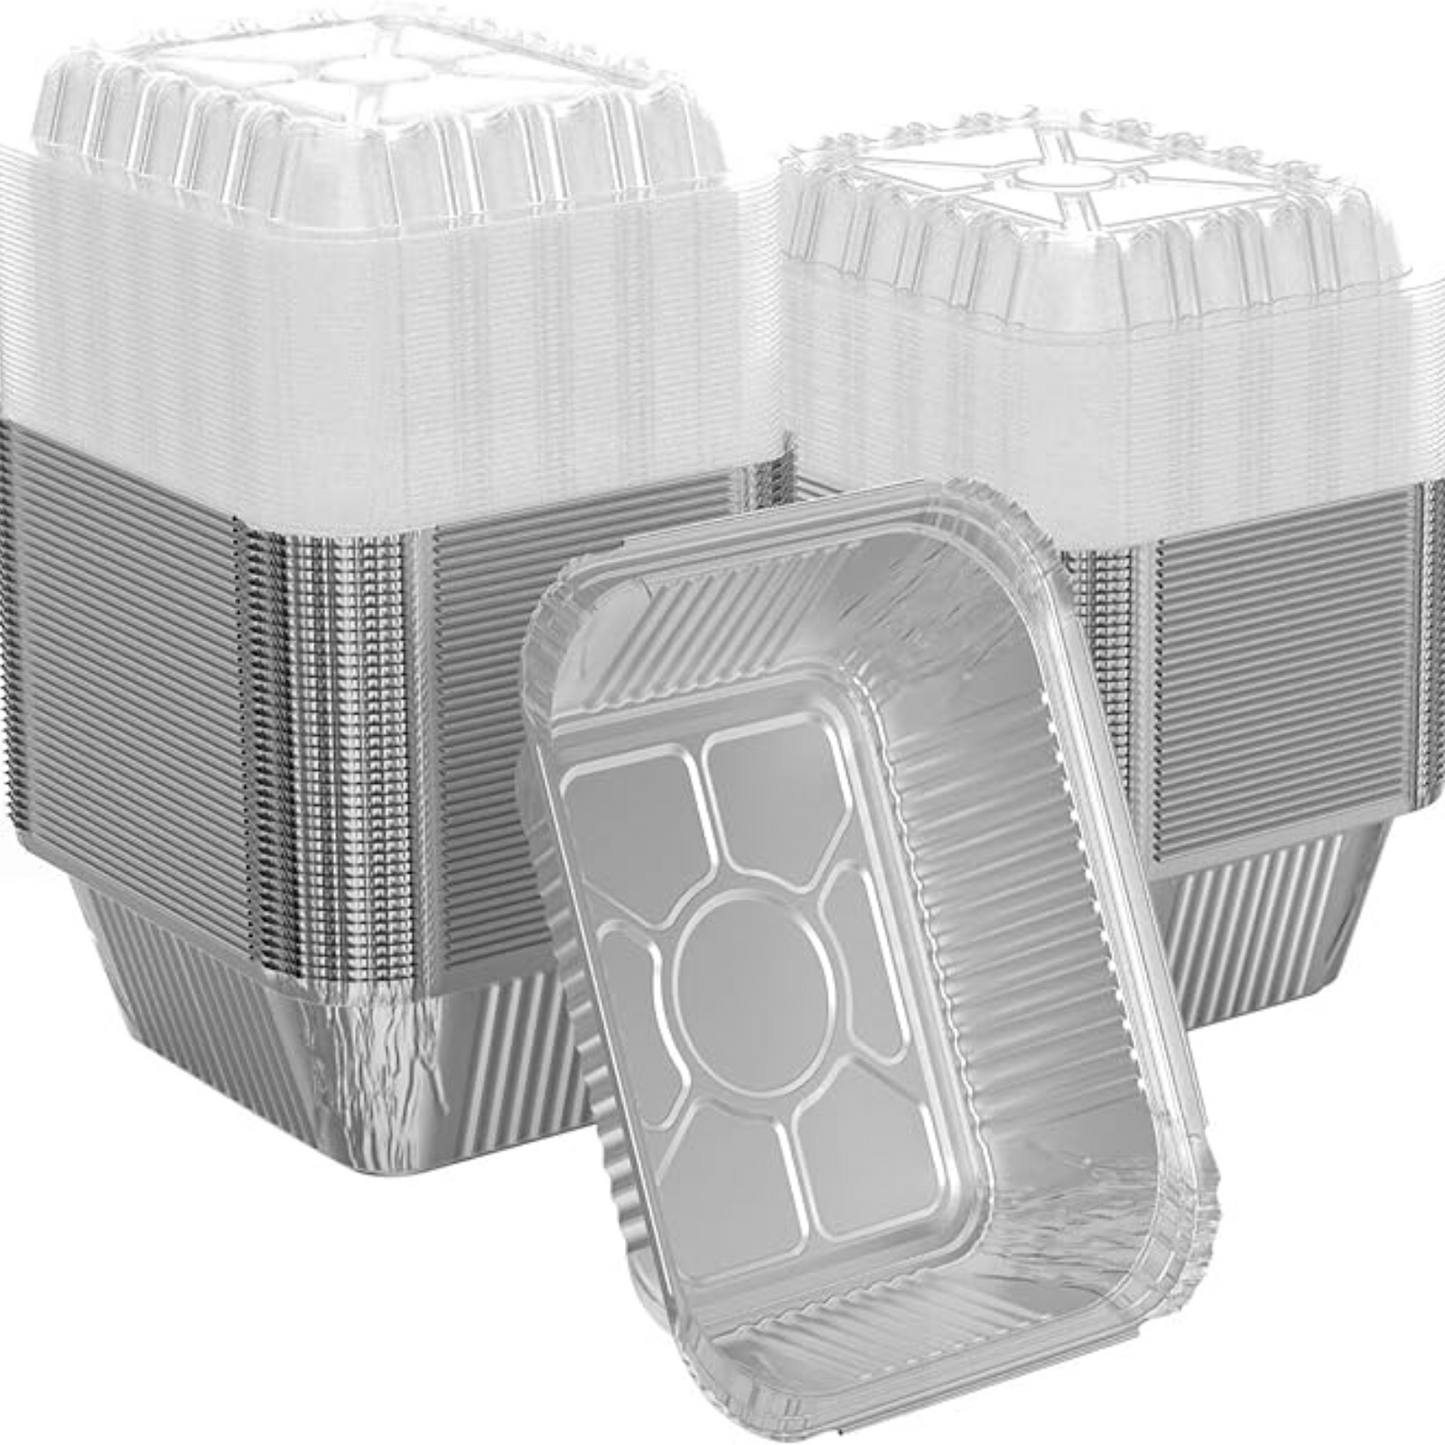 *WHOLESALE* Dome Lids For 1Lb Aluminum Oblong Pans 5" x 4" | 1000 ct/case Disposable VeZee   